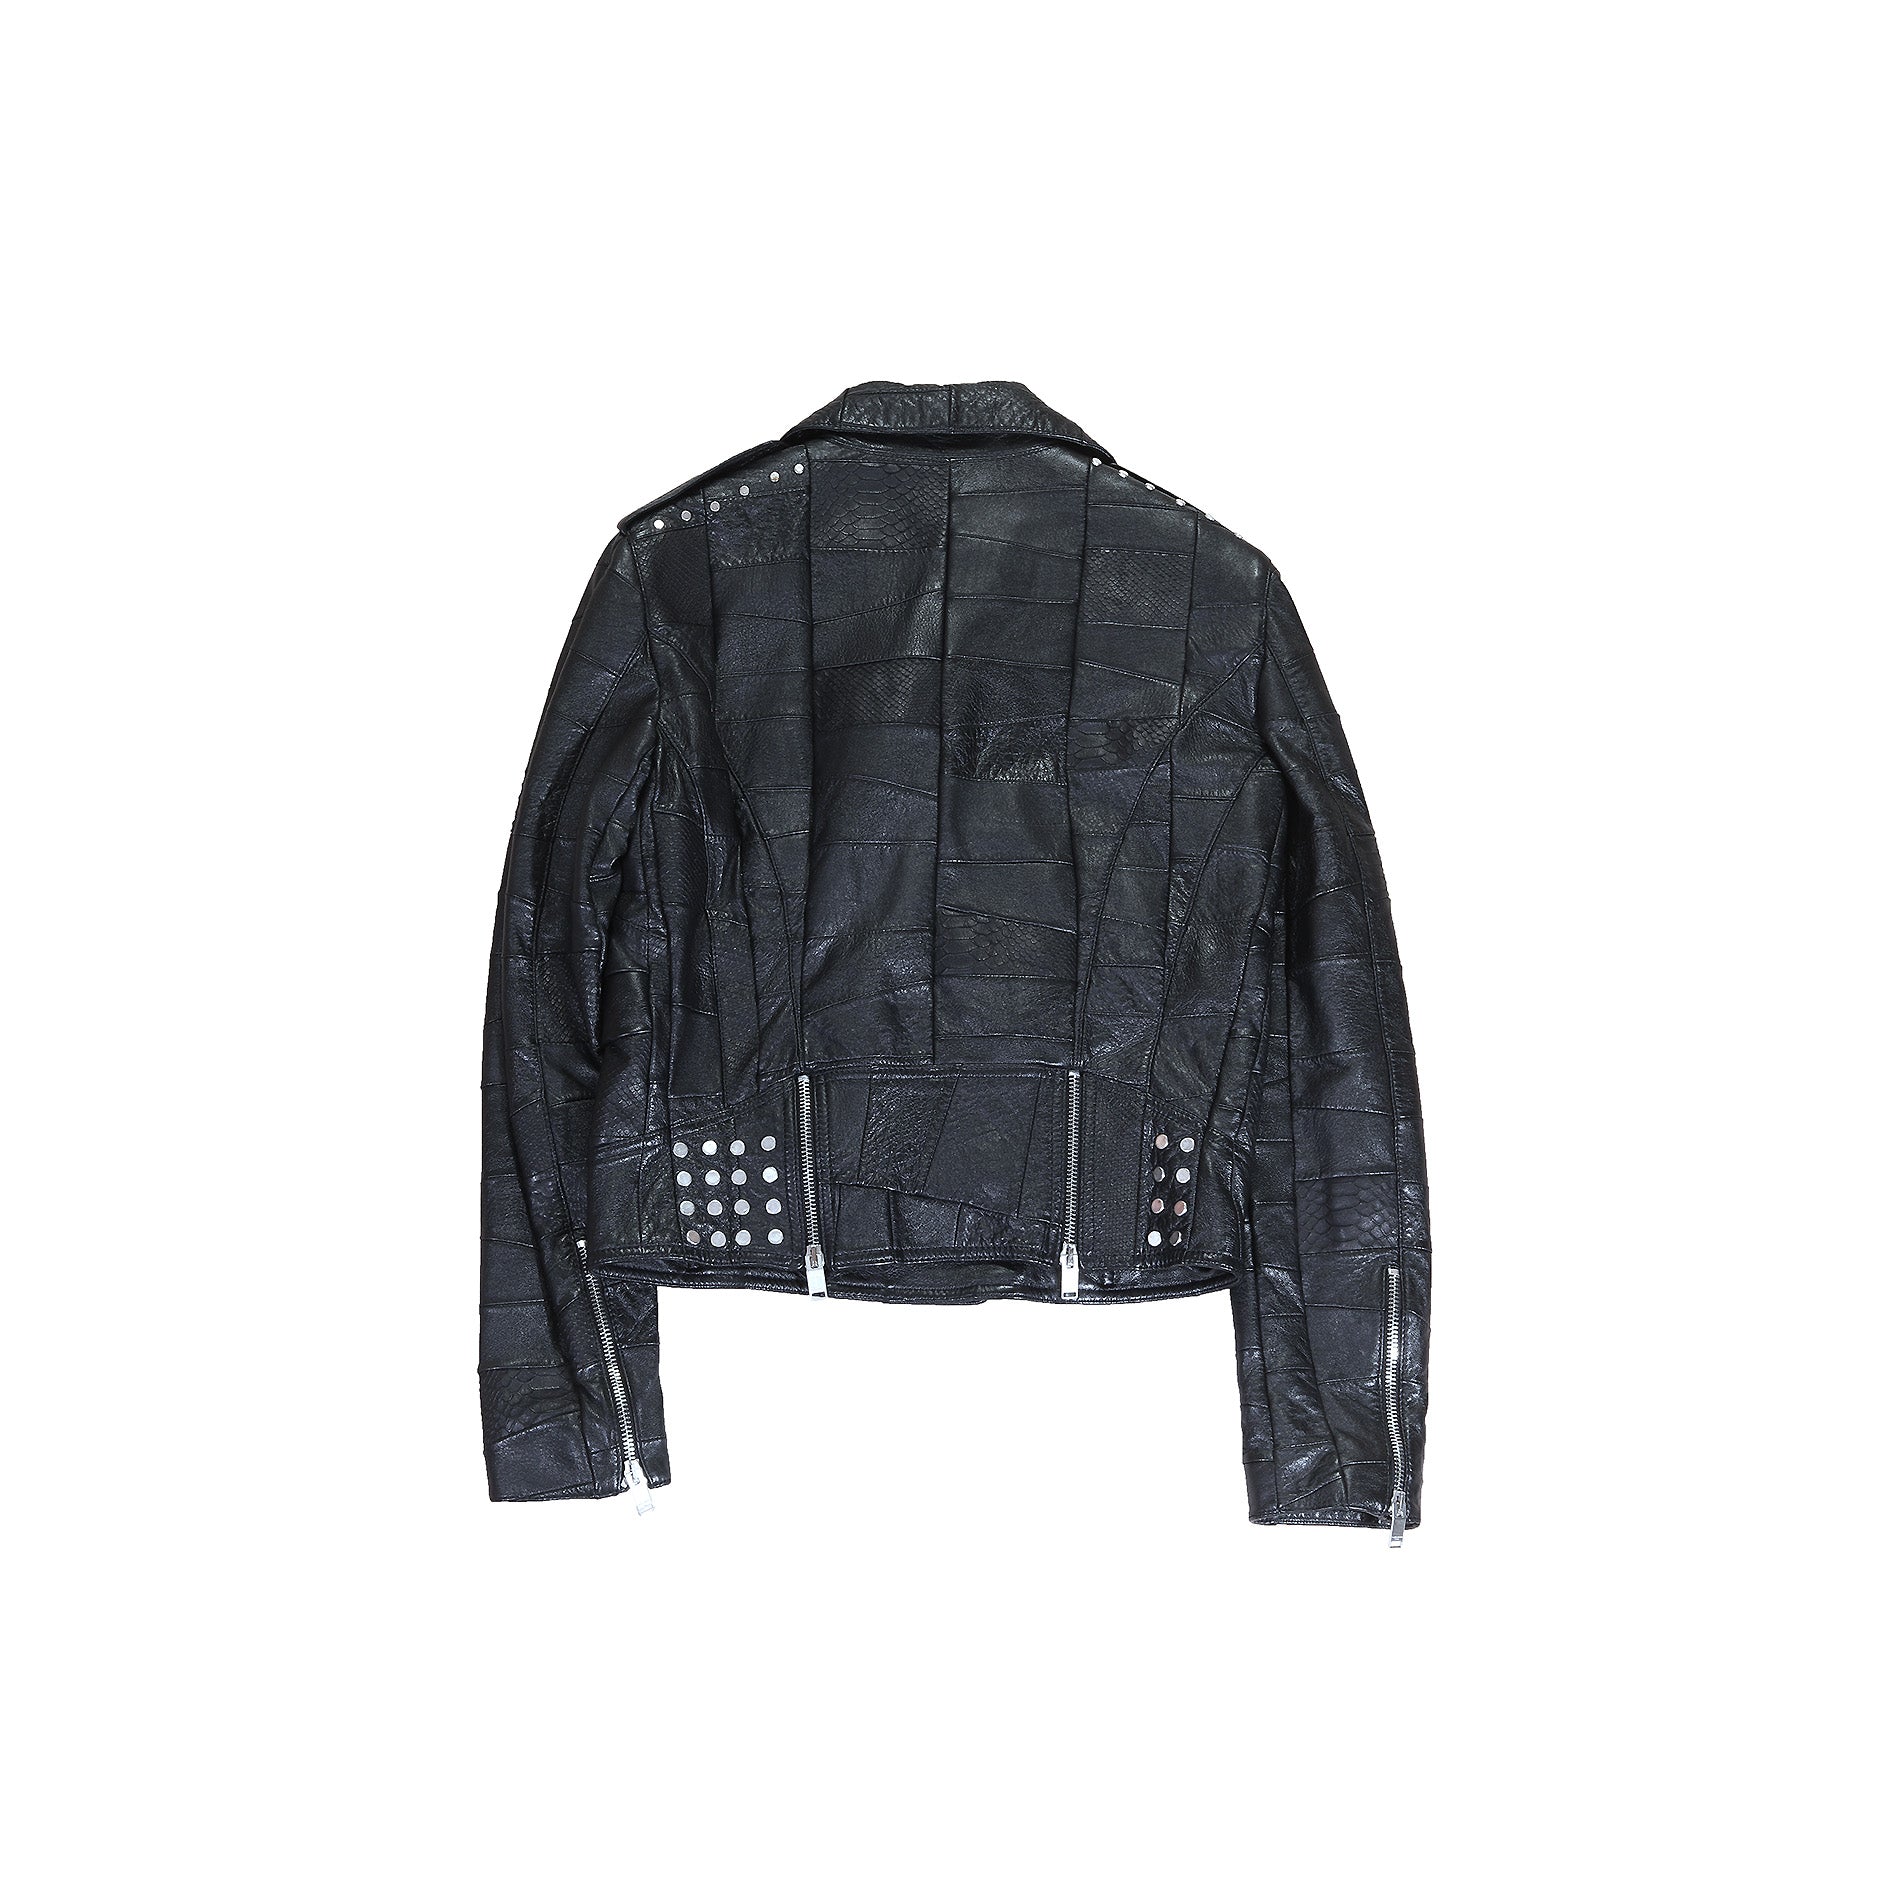 Saint Laurent SS16 Multi Patch Leather Jacket